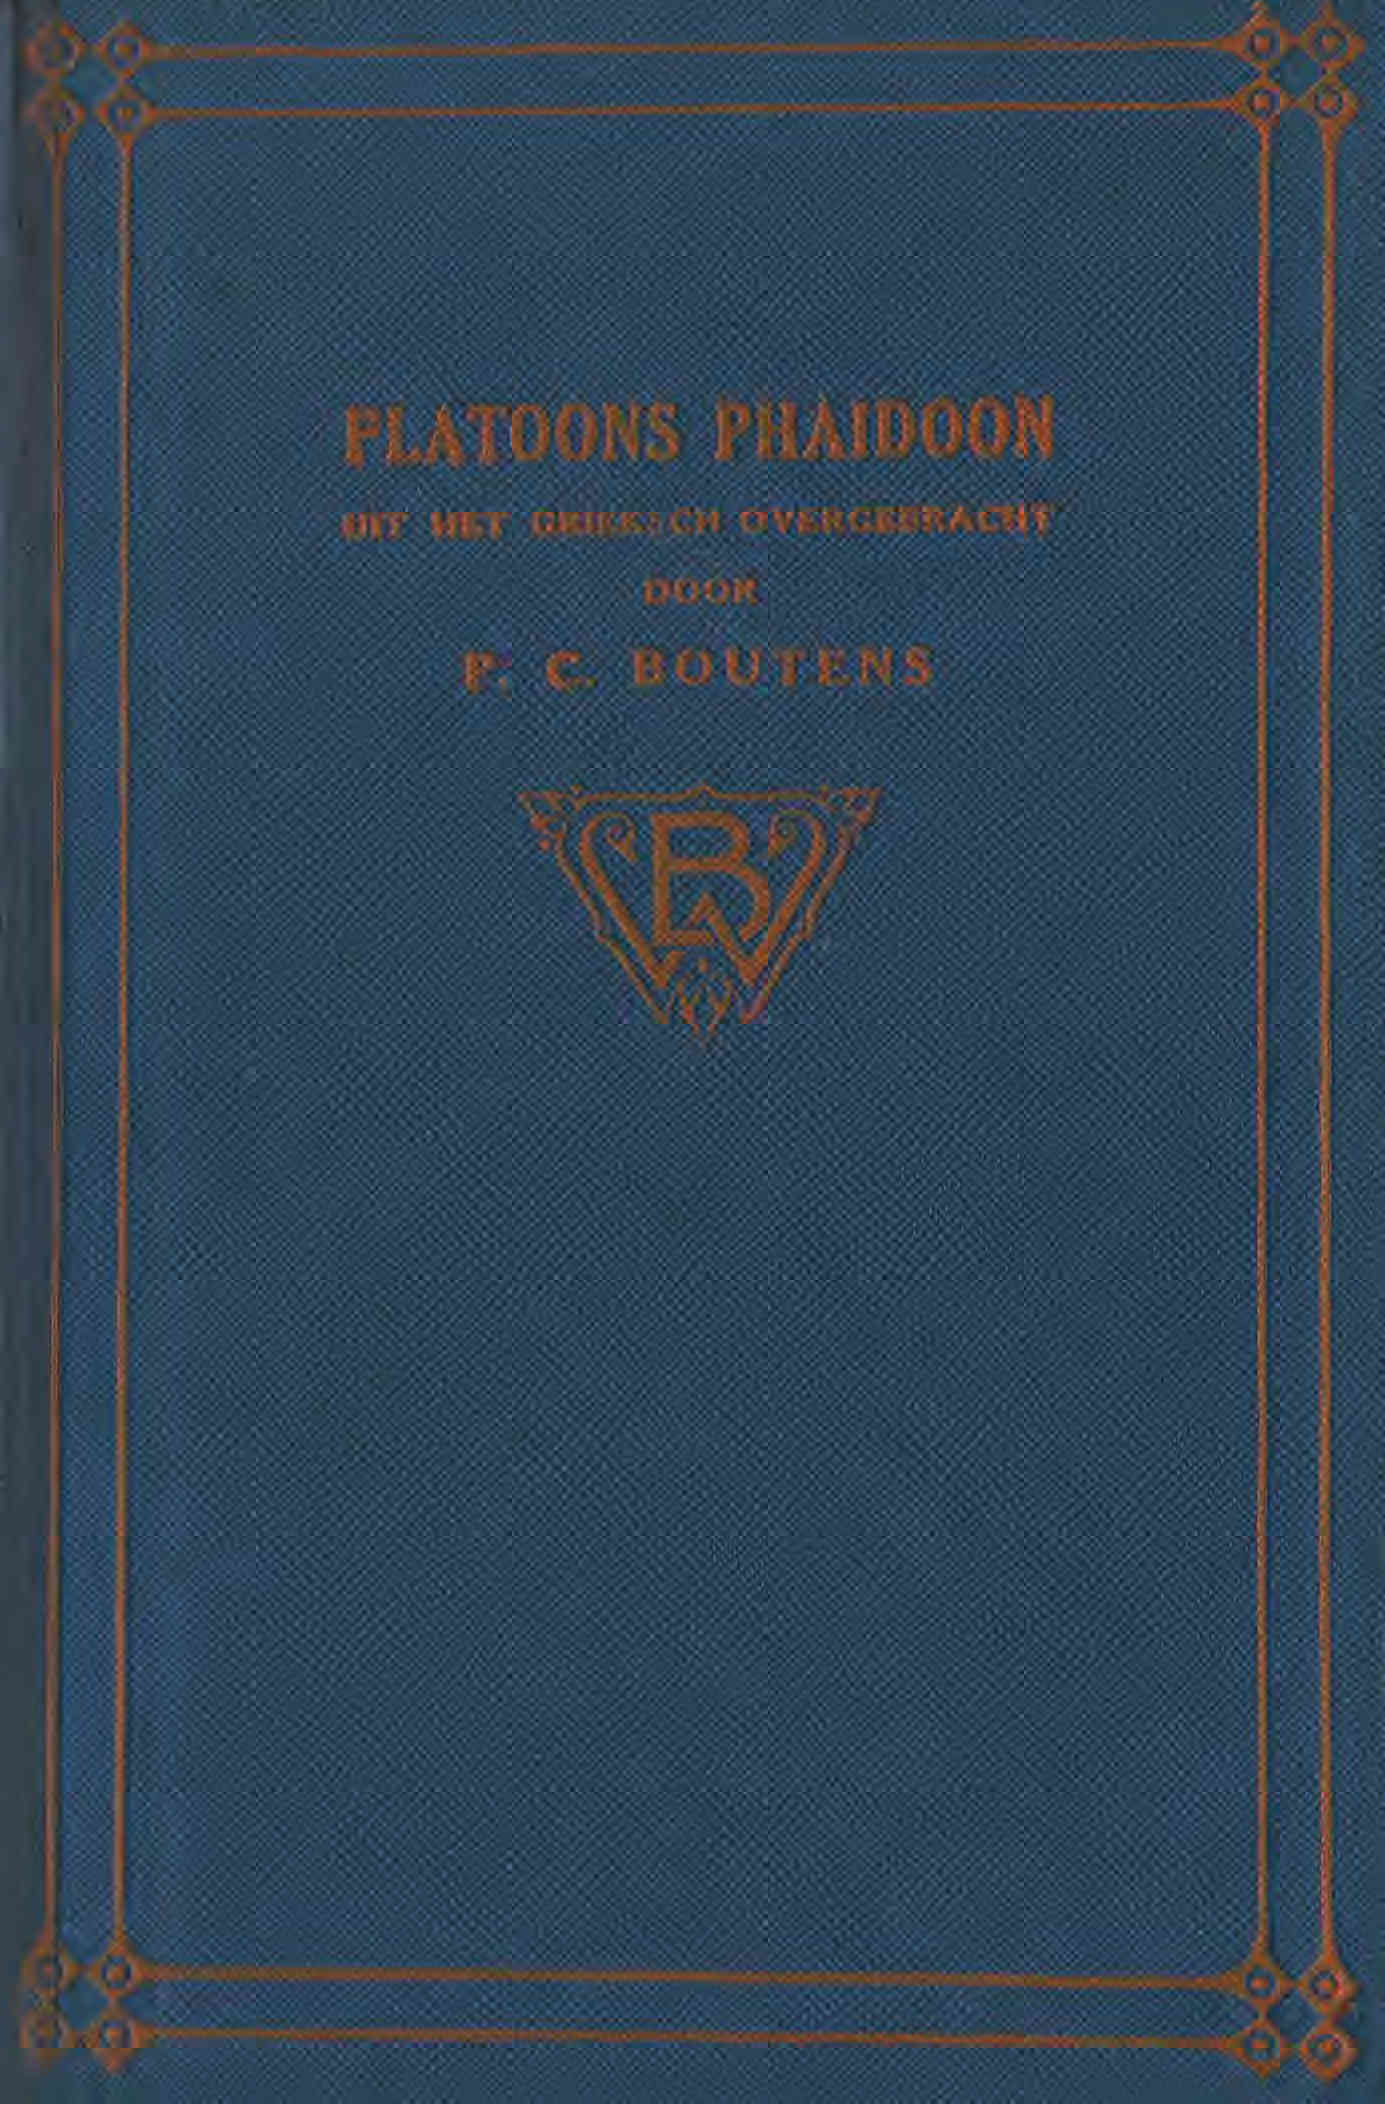 Platoons Phaidoon